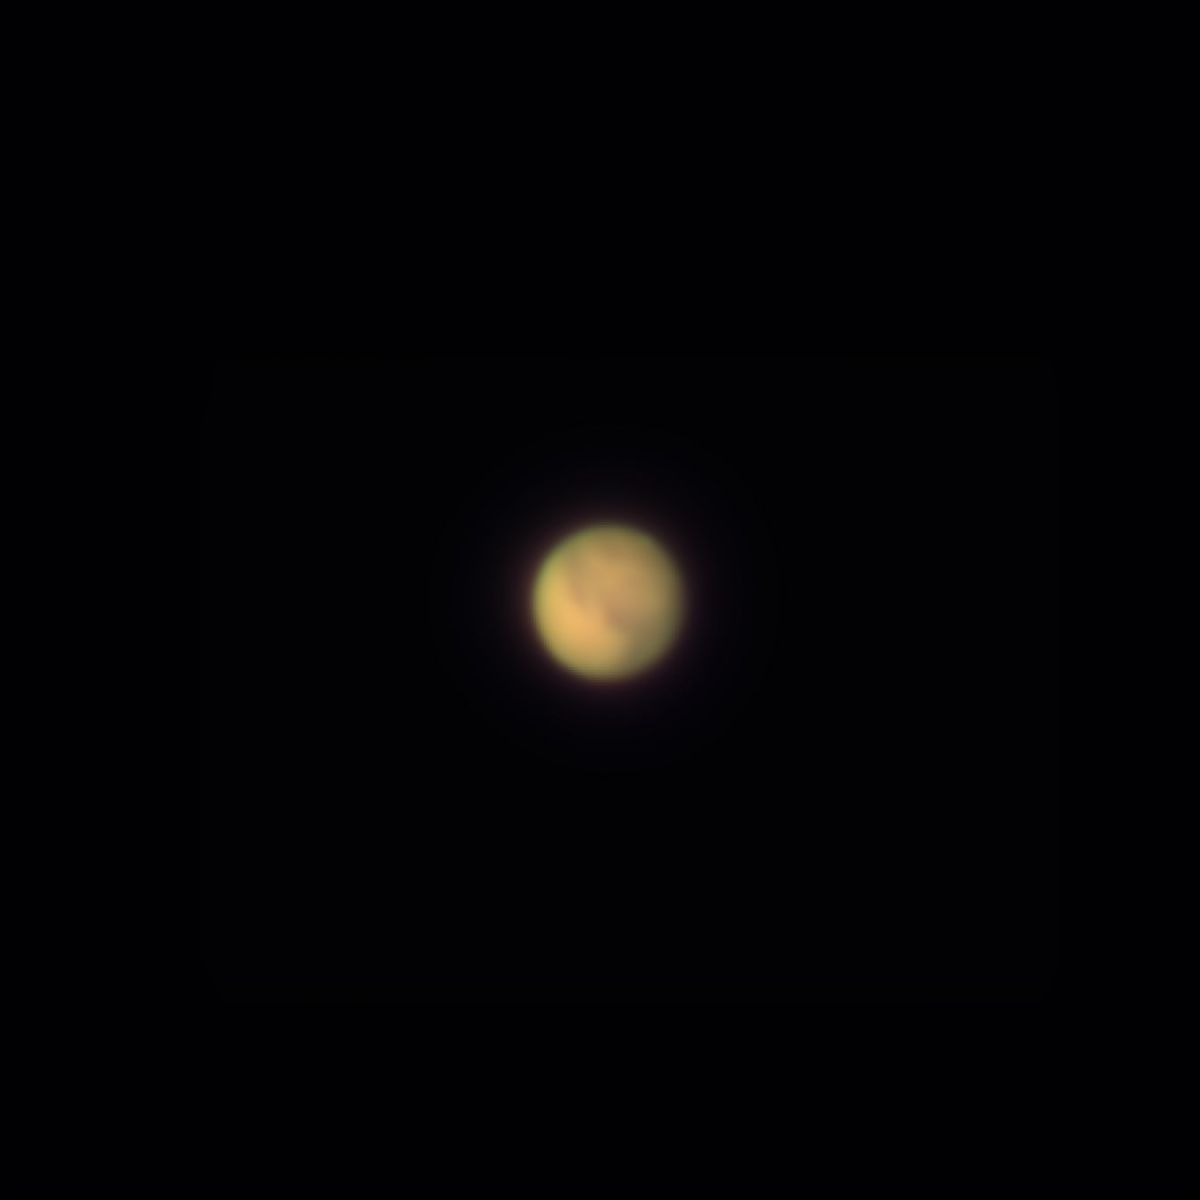 Mars Jupiter am 7.11.2020 mit ASI183Pro am 100/1500mm Refraktor